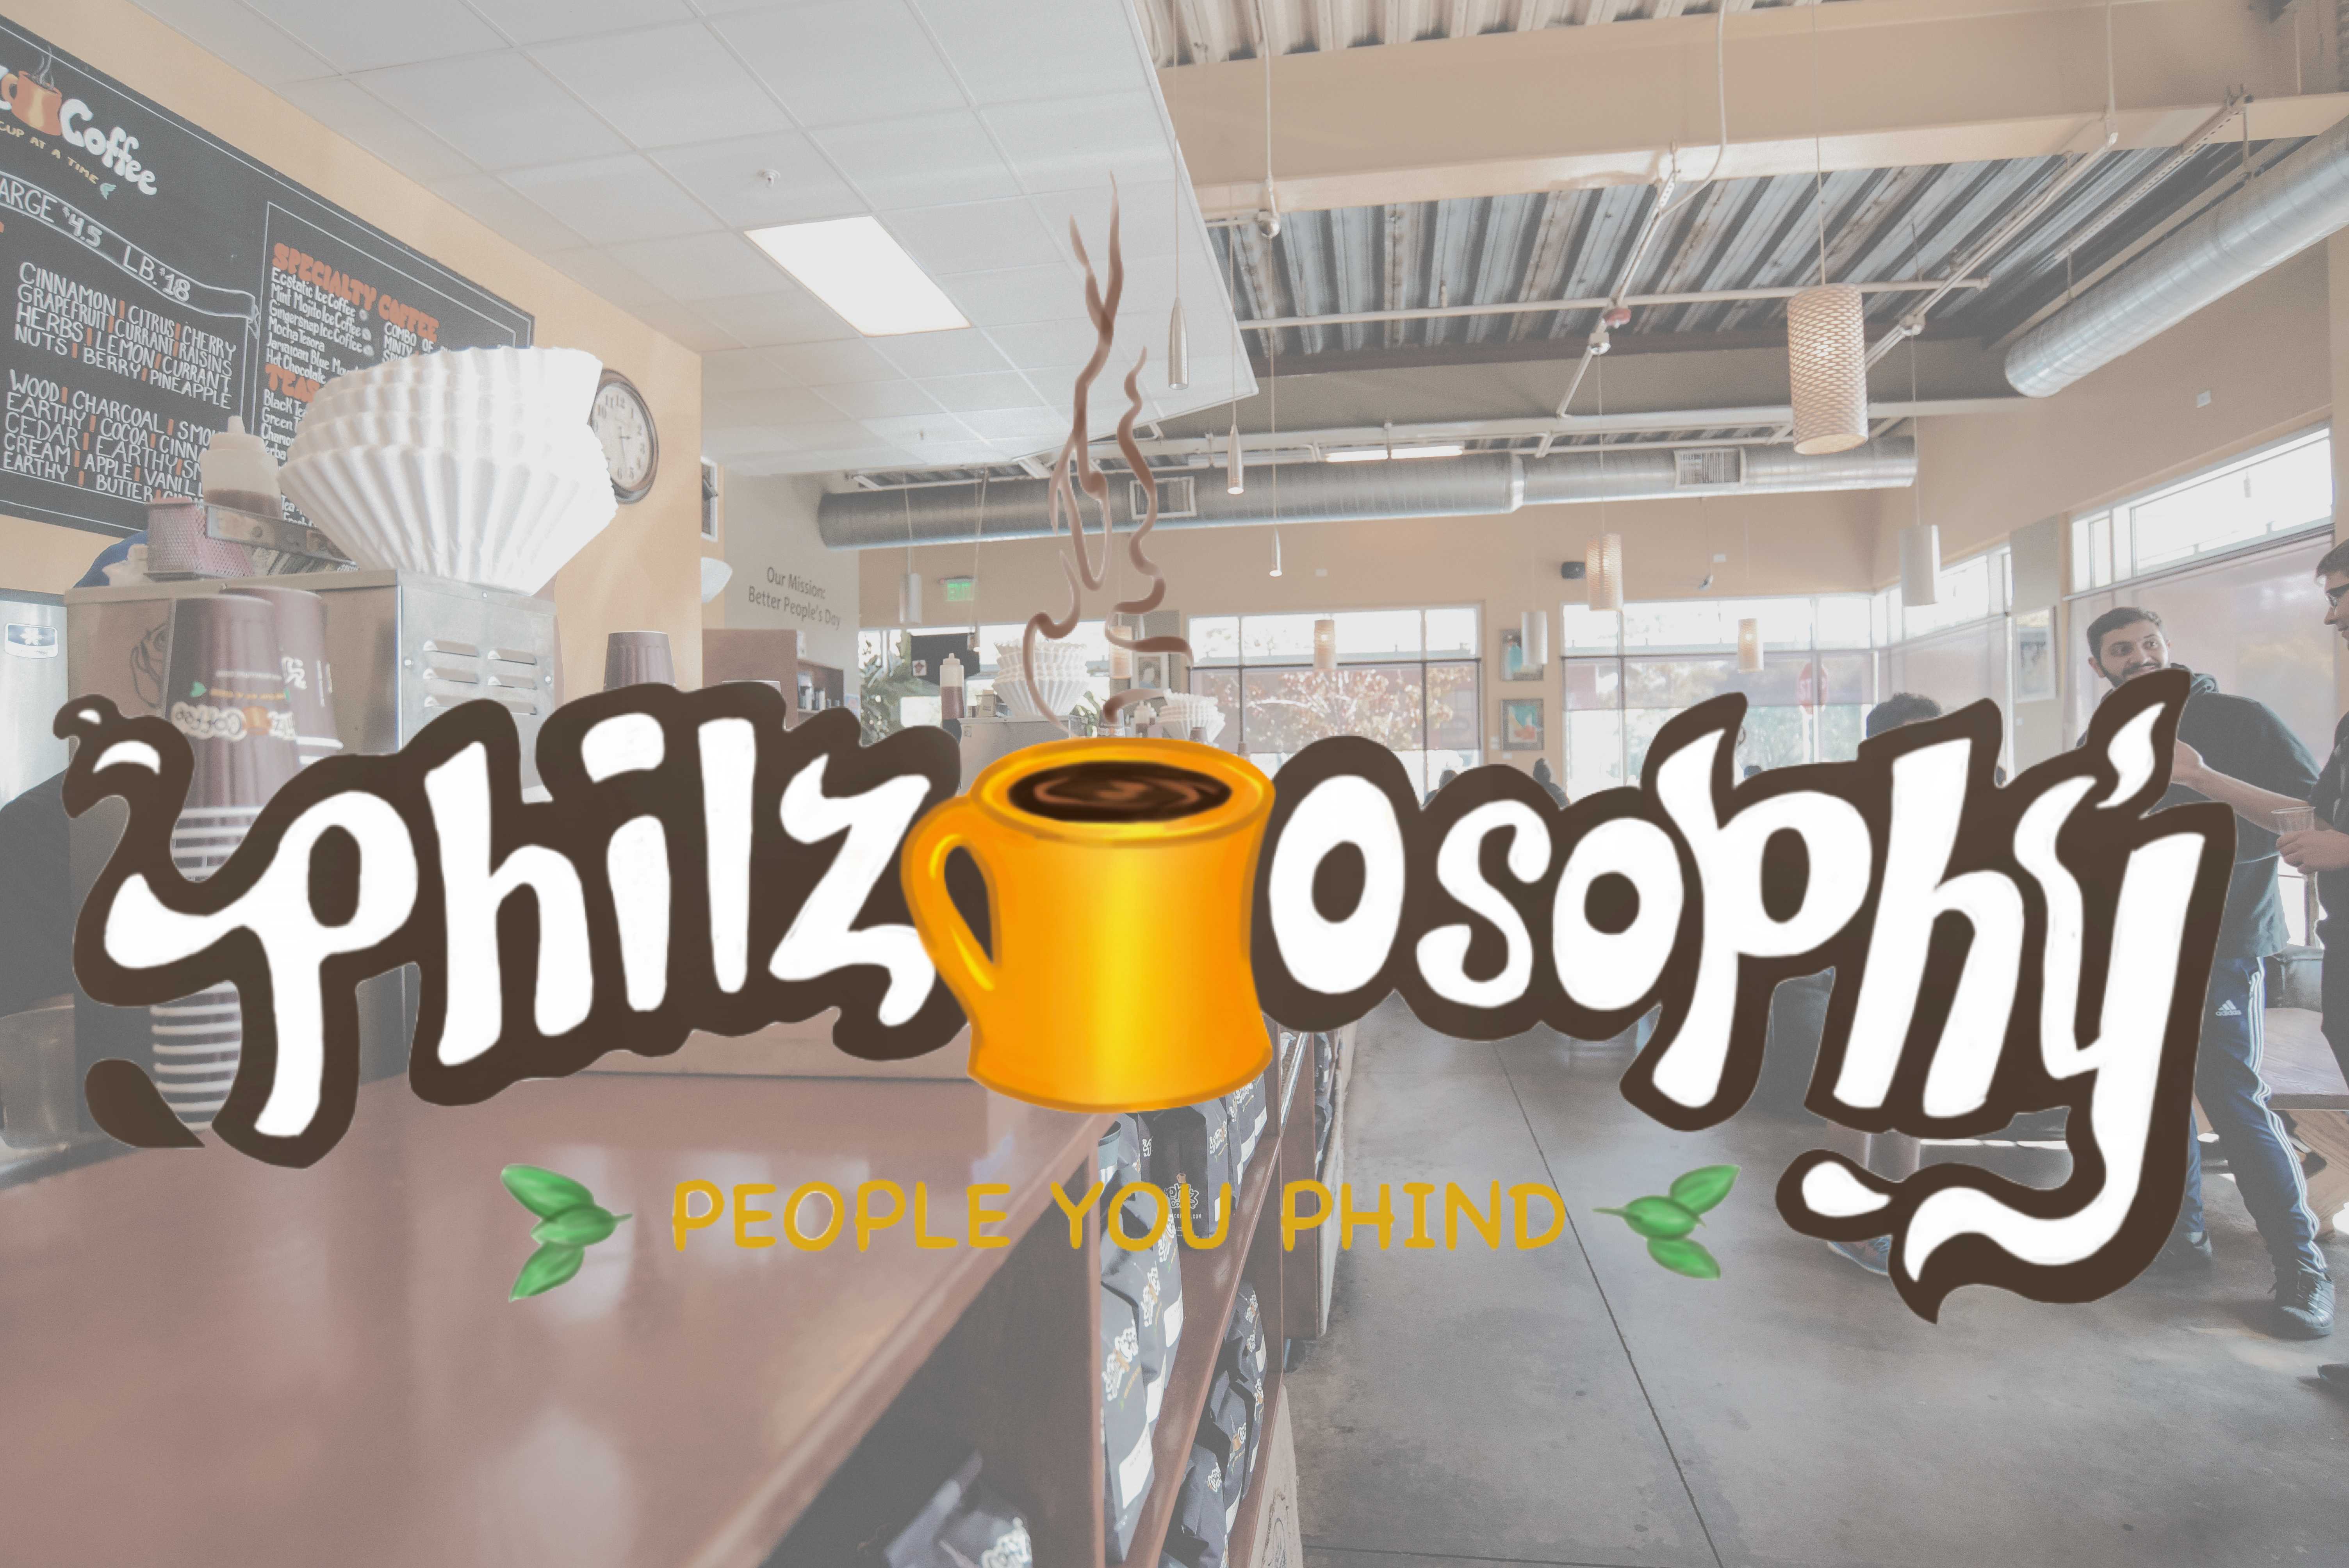 Philz-Osophy